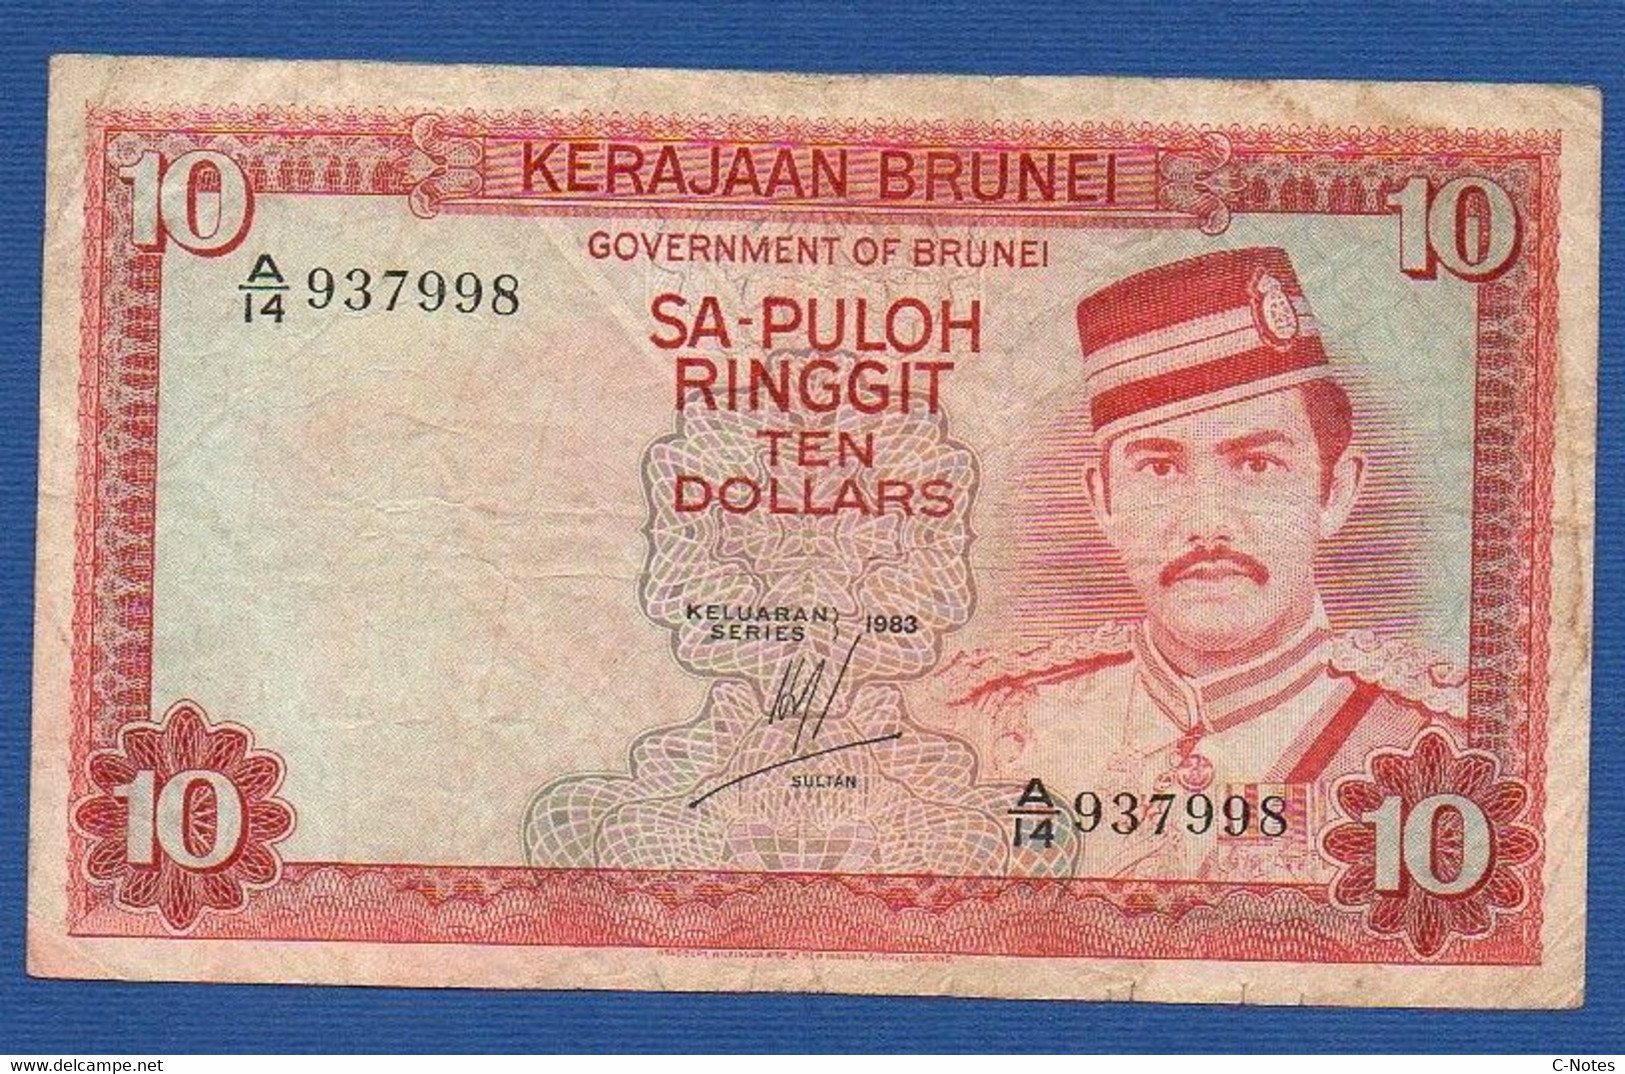 BRUNEI - P. 8b – 10 Ringgit / Dollars 1983 F/VF, Serie A/14 937998 - Brunei